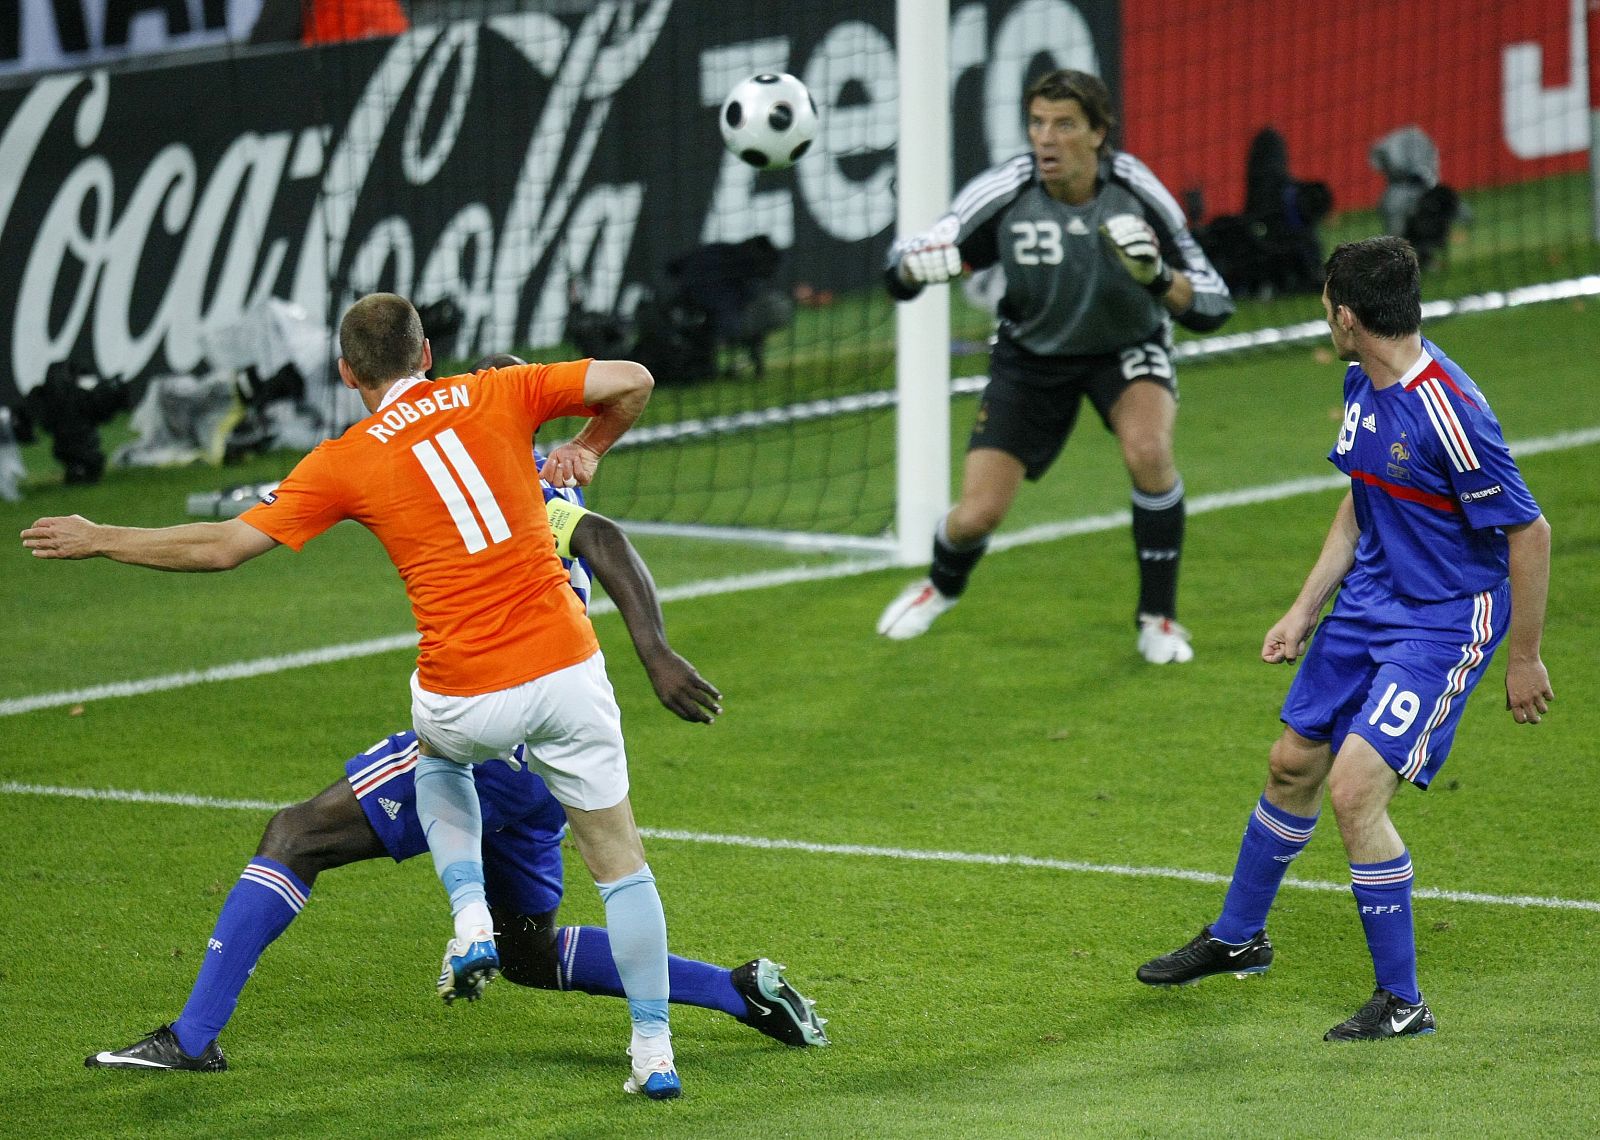 El madridista Robben dispara para marcar el tercer gol de su equipo.